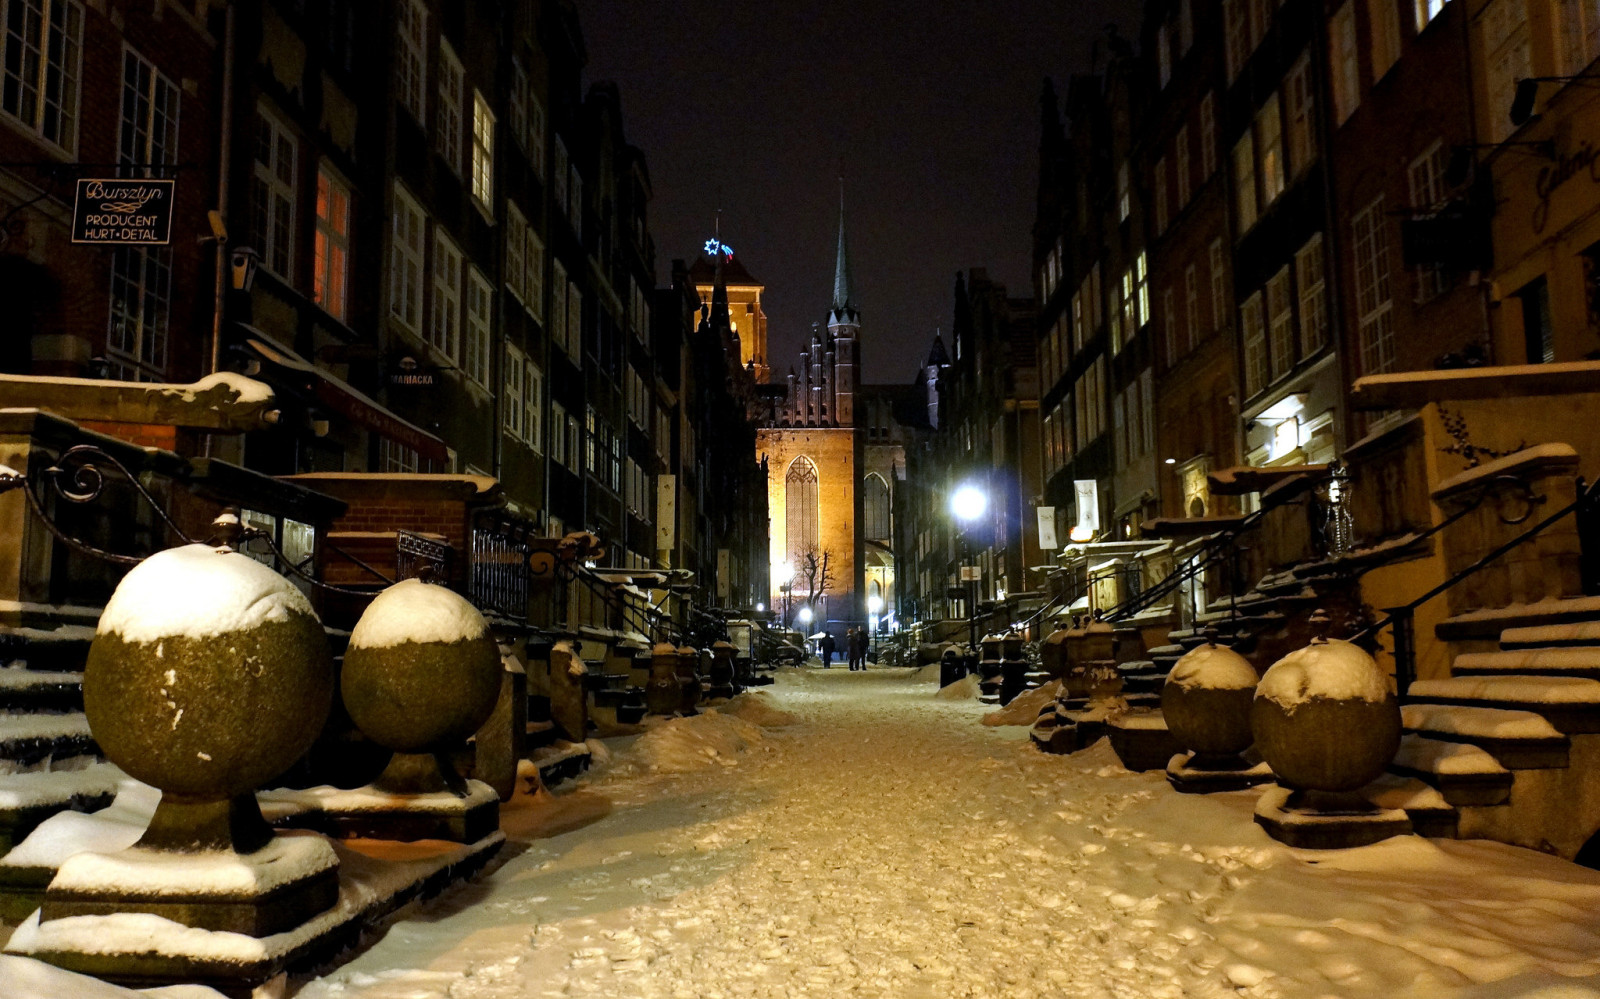 ถนน, ฤดูหนาว, กลางคืน, บ้าน, โปแลนด์, Gdansk